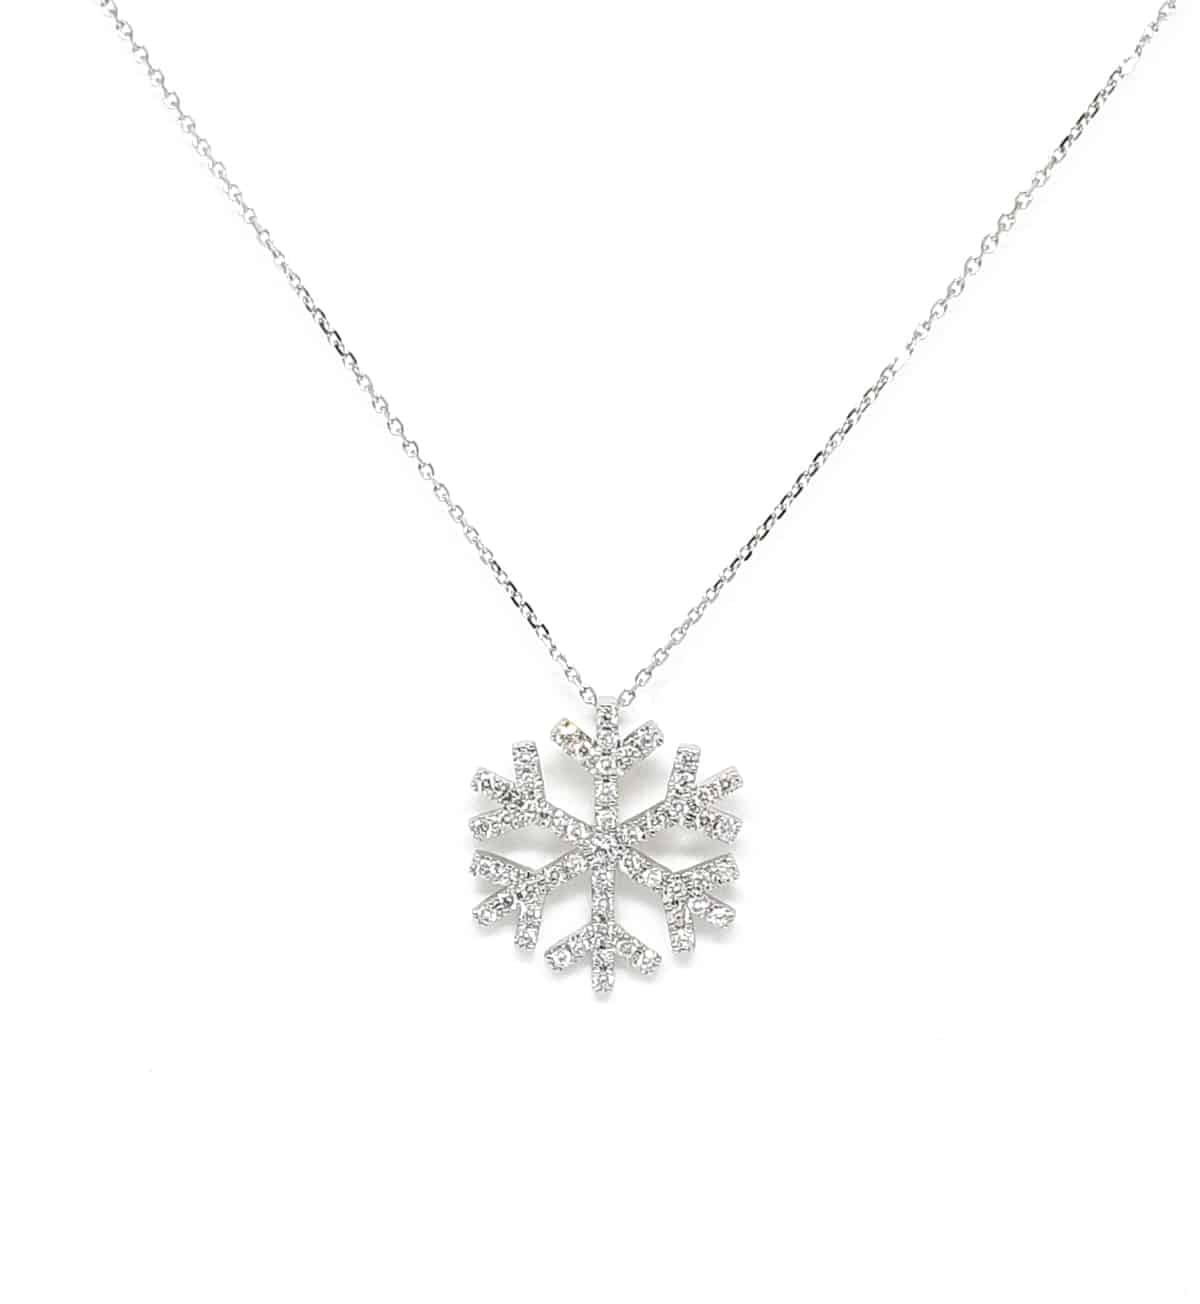 DeRocks Winter Dream Diamond Pendant in 18K White Gold - DeRocks ...